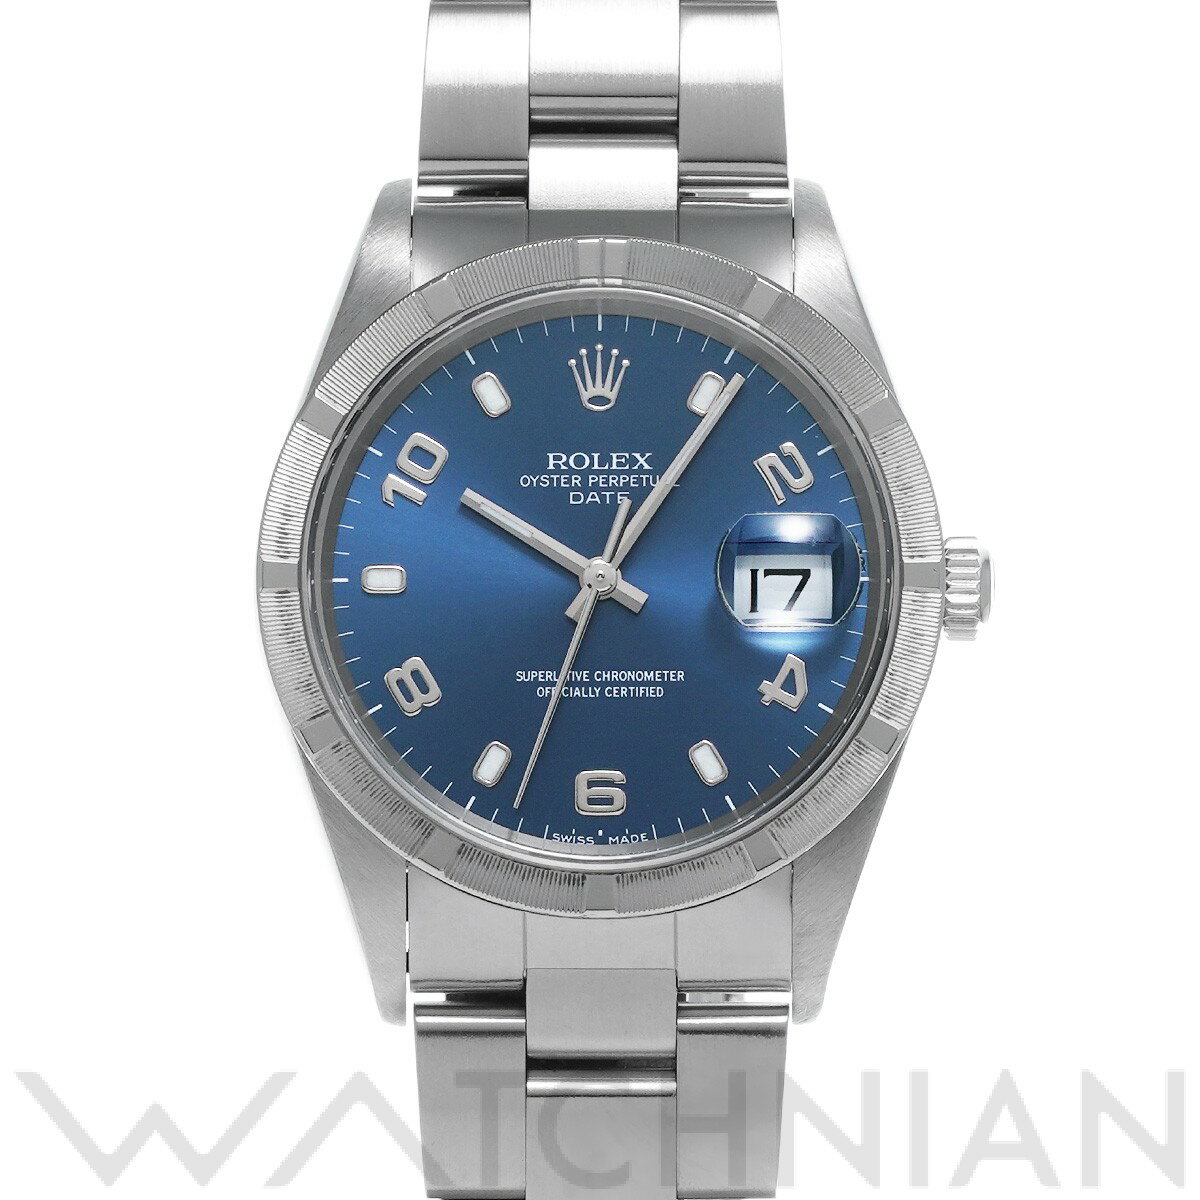 【5種選べるクーポン】【ローン60回払い無金利】【中古】 ロレックス ROLEX オイスターパーペチュアル デイト 15210 A番(1999年頃製造) ブルー メンズ 腕時計 ロレックス 時計 高級腕時計 ブランド